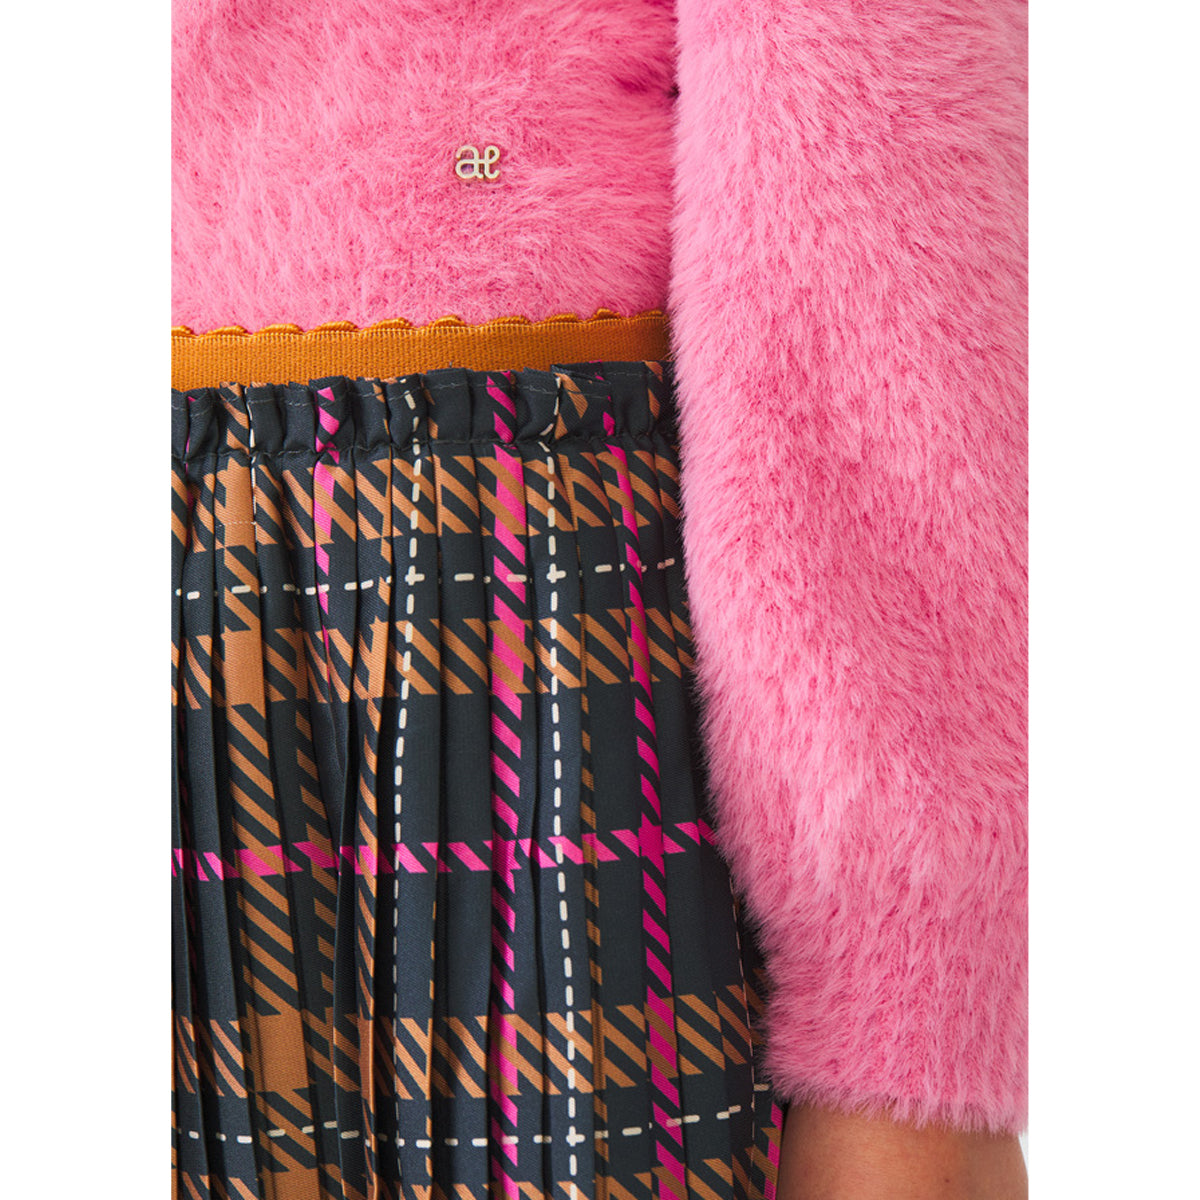 Bubblegum Plaid Pleated Skirt